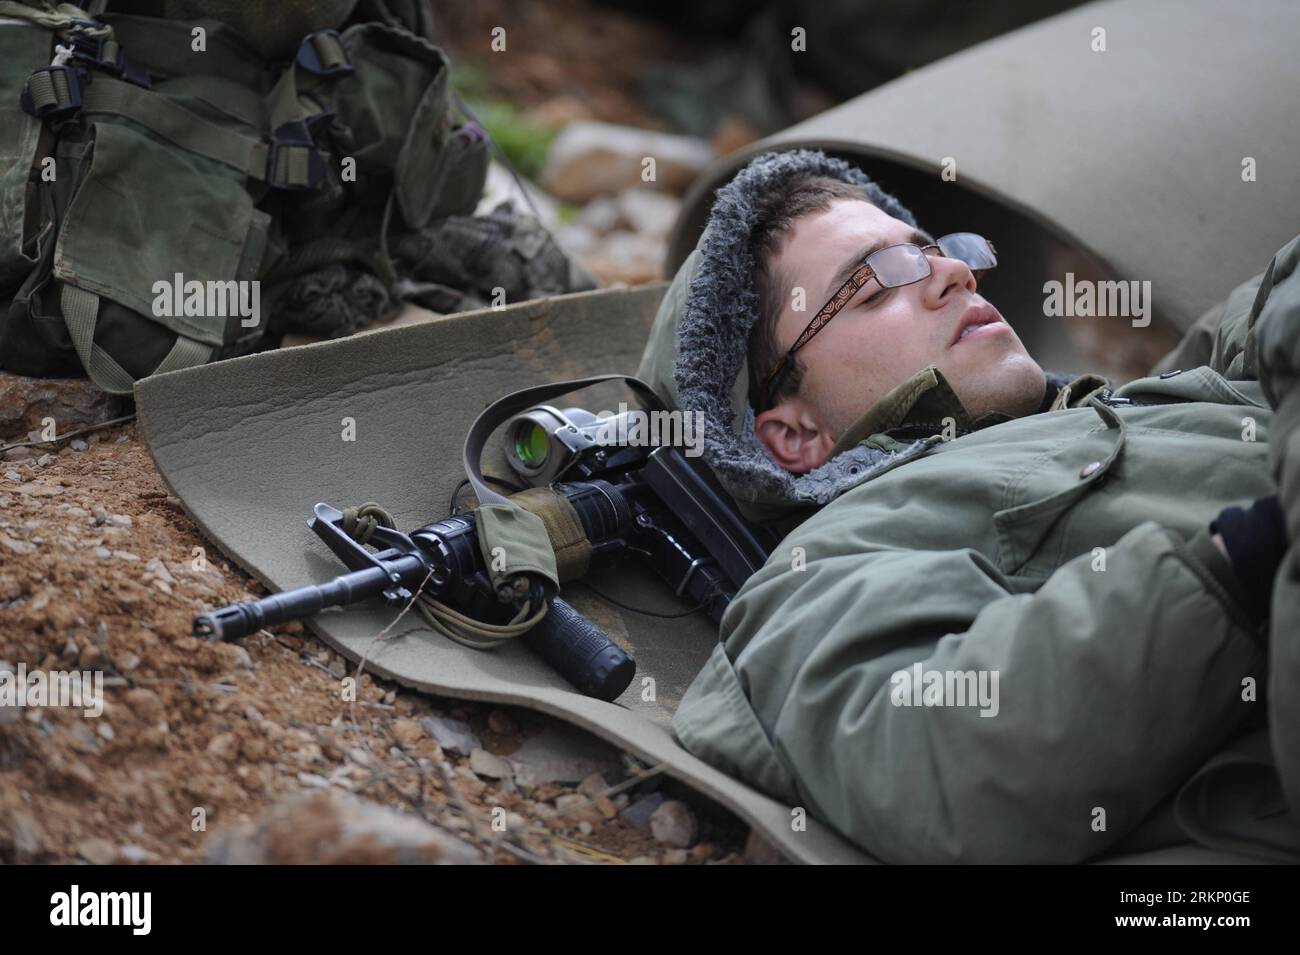 Bildnummer: 57770216 Datum: 30.03.2012 Copyright: Imago/Xinhua (120330) -- MAJDAL SHAMS, 30 de marzo de 2012 (Xinhua) -- Un soldado israelí espera en un puesto avanzado en la línea de alto el fuego sirio-israelí cerca de la aldea drusa de Majdal Shams en los Altos del Golán el 30 de marzo de 2012. Israel desplegó miles de fuerzas de seguridad adicionales el viernes, reforzar los cruces fronterizos con Líbano y Siria y cerrar los cruces con la Cisjordania ocupada para un evento de solidaridad llamado Marcha Global a Jerusalén en el Día de la Tierra para conmemorar el evento cuando seis árabes murieron en 1976 mientras protestaban contra el sei de Israel Foto de stock